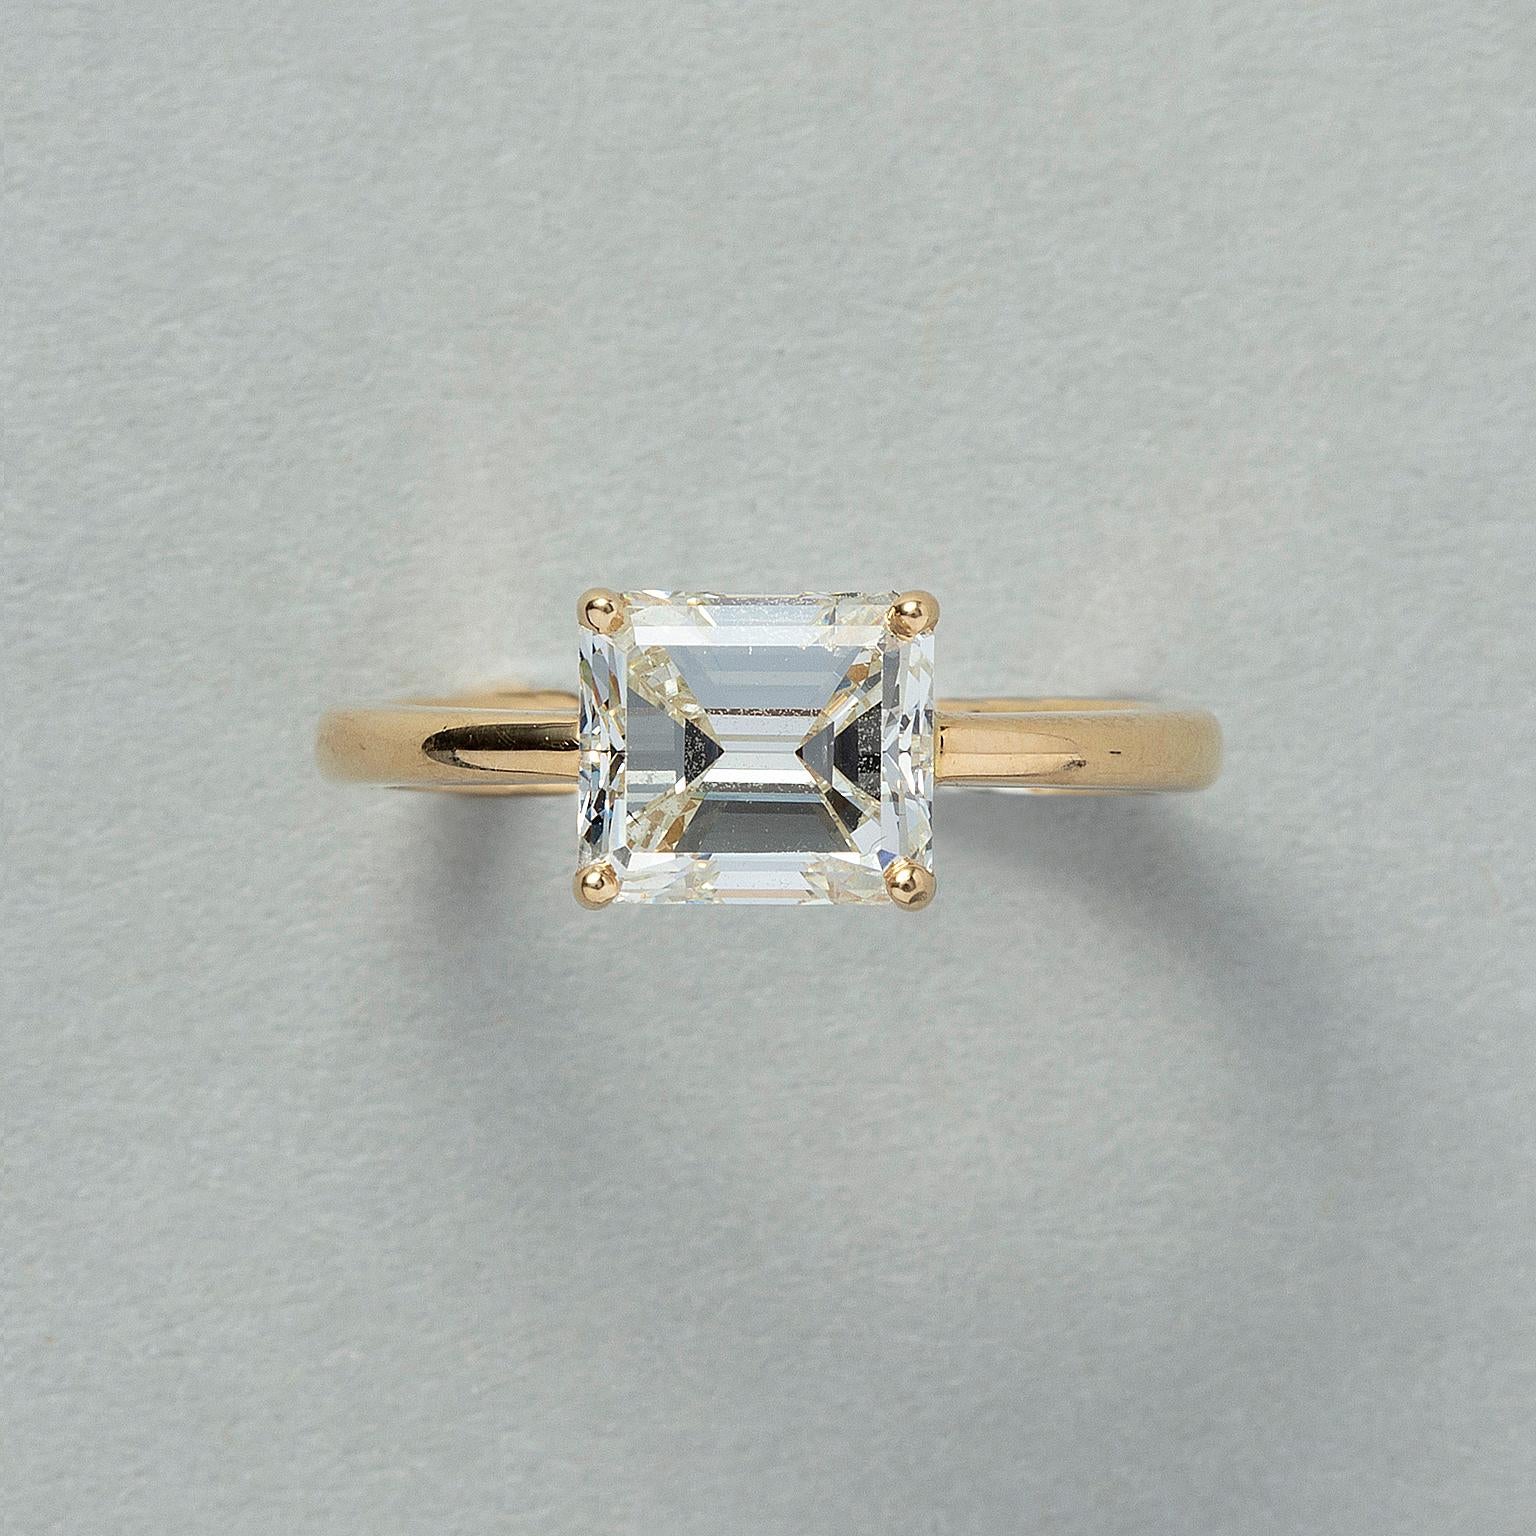 Ein schlichter und sauberer Ring aus 18 Karat Gold mit einem Diamanten im Stufenschliff (2,00 Karat, J, VS2) in einer Kastenfassung mit Zacken, Frankreich.

gewicht: 3,80 Gramm
ringgröße: 16,5 mm / 6 US
breite: 6,5 - 2,25 mm